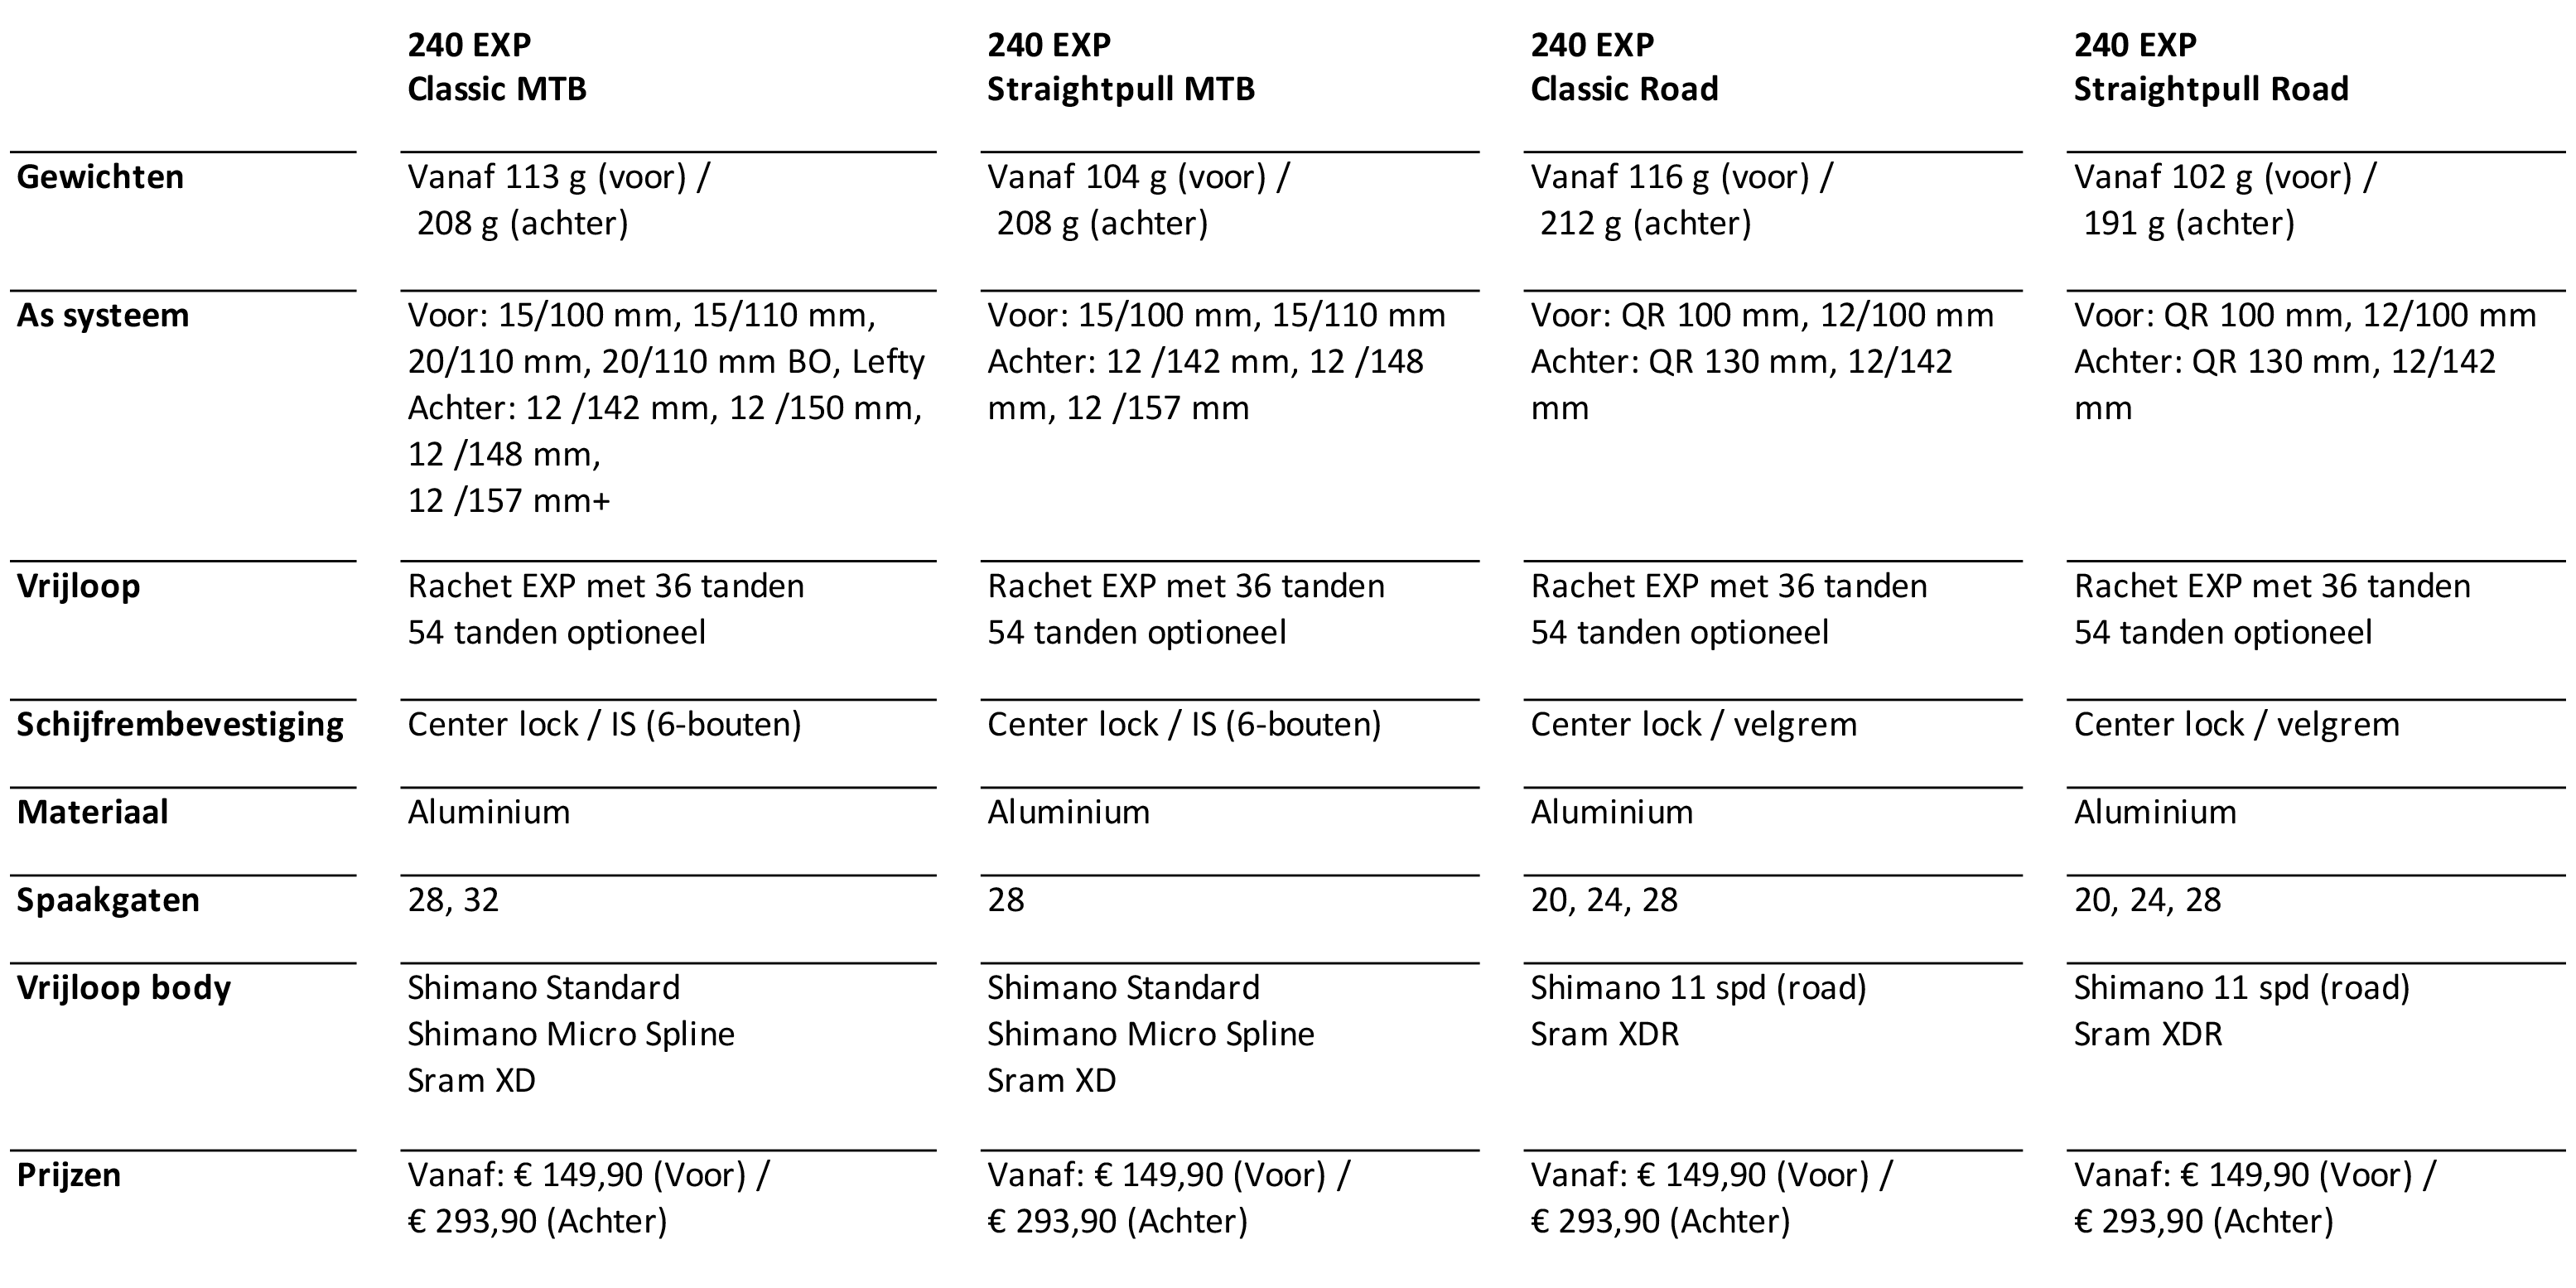 DT Swiss 240 EXP Specificaties